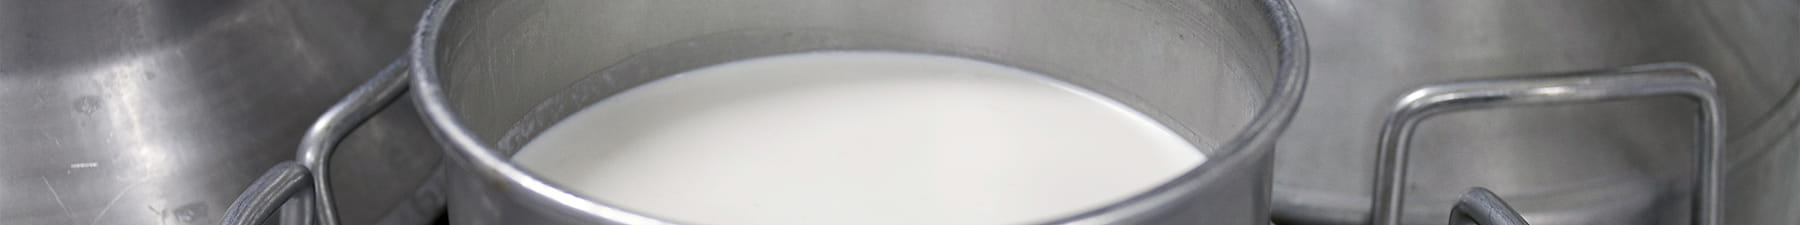 Milk jugs